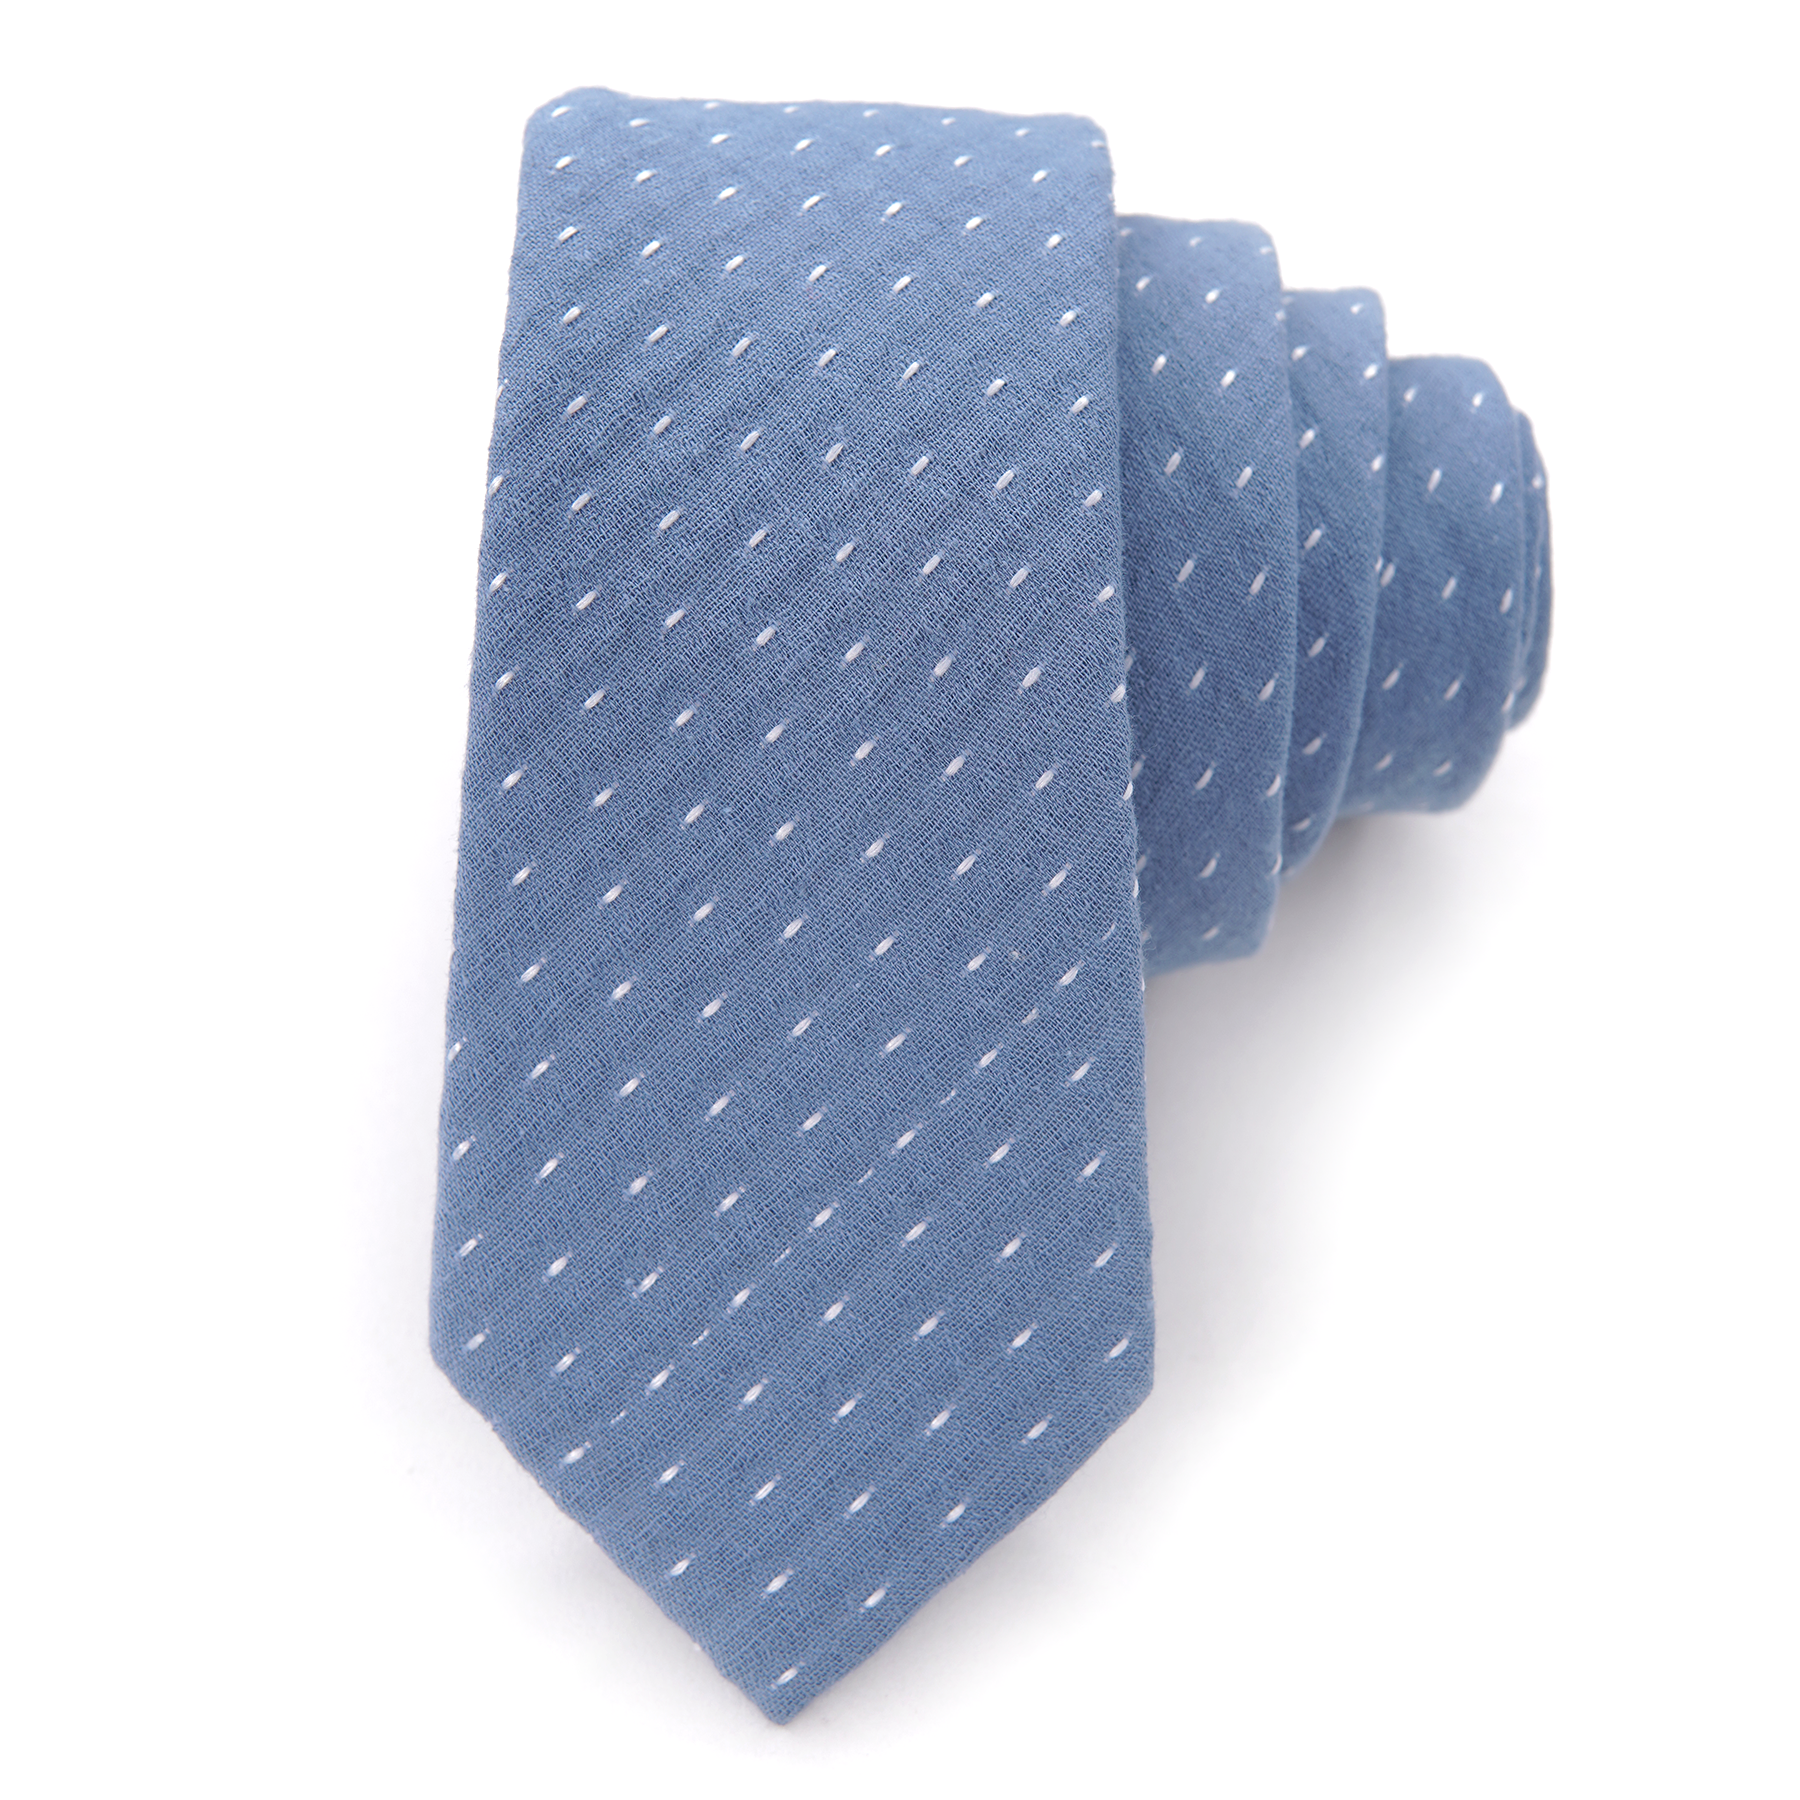 Bay - Men's Tie